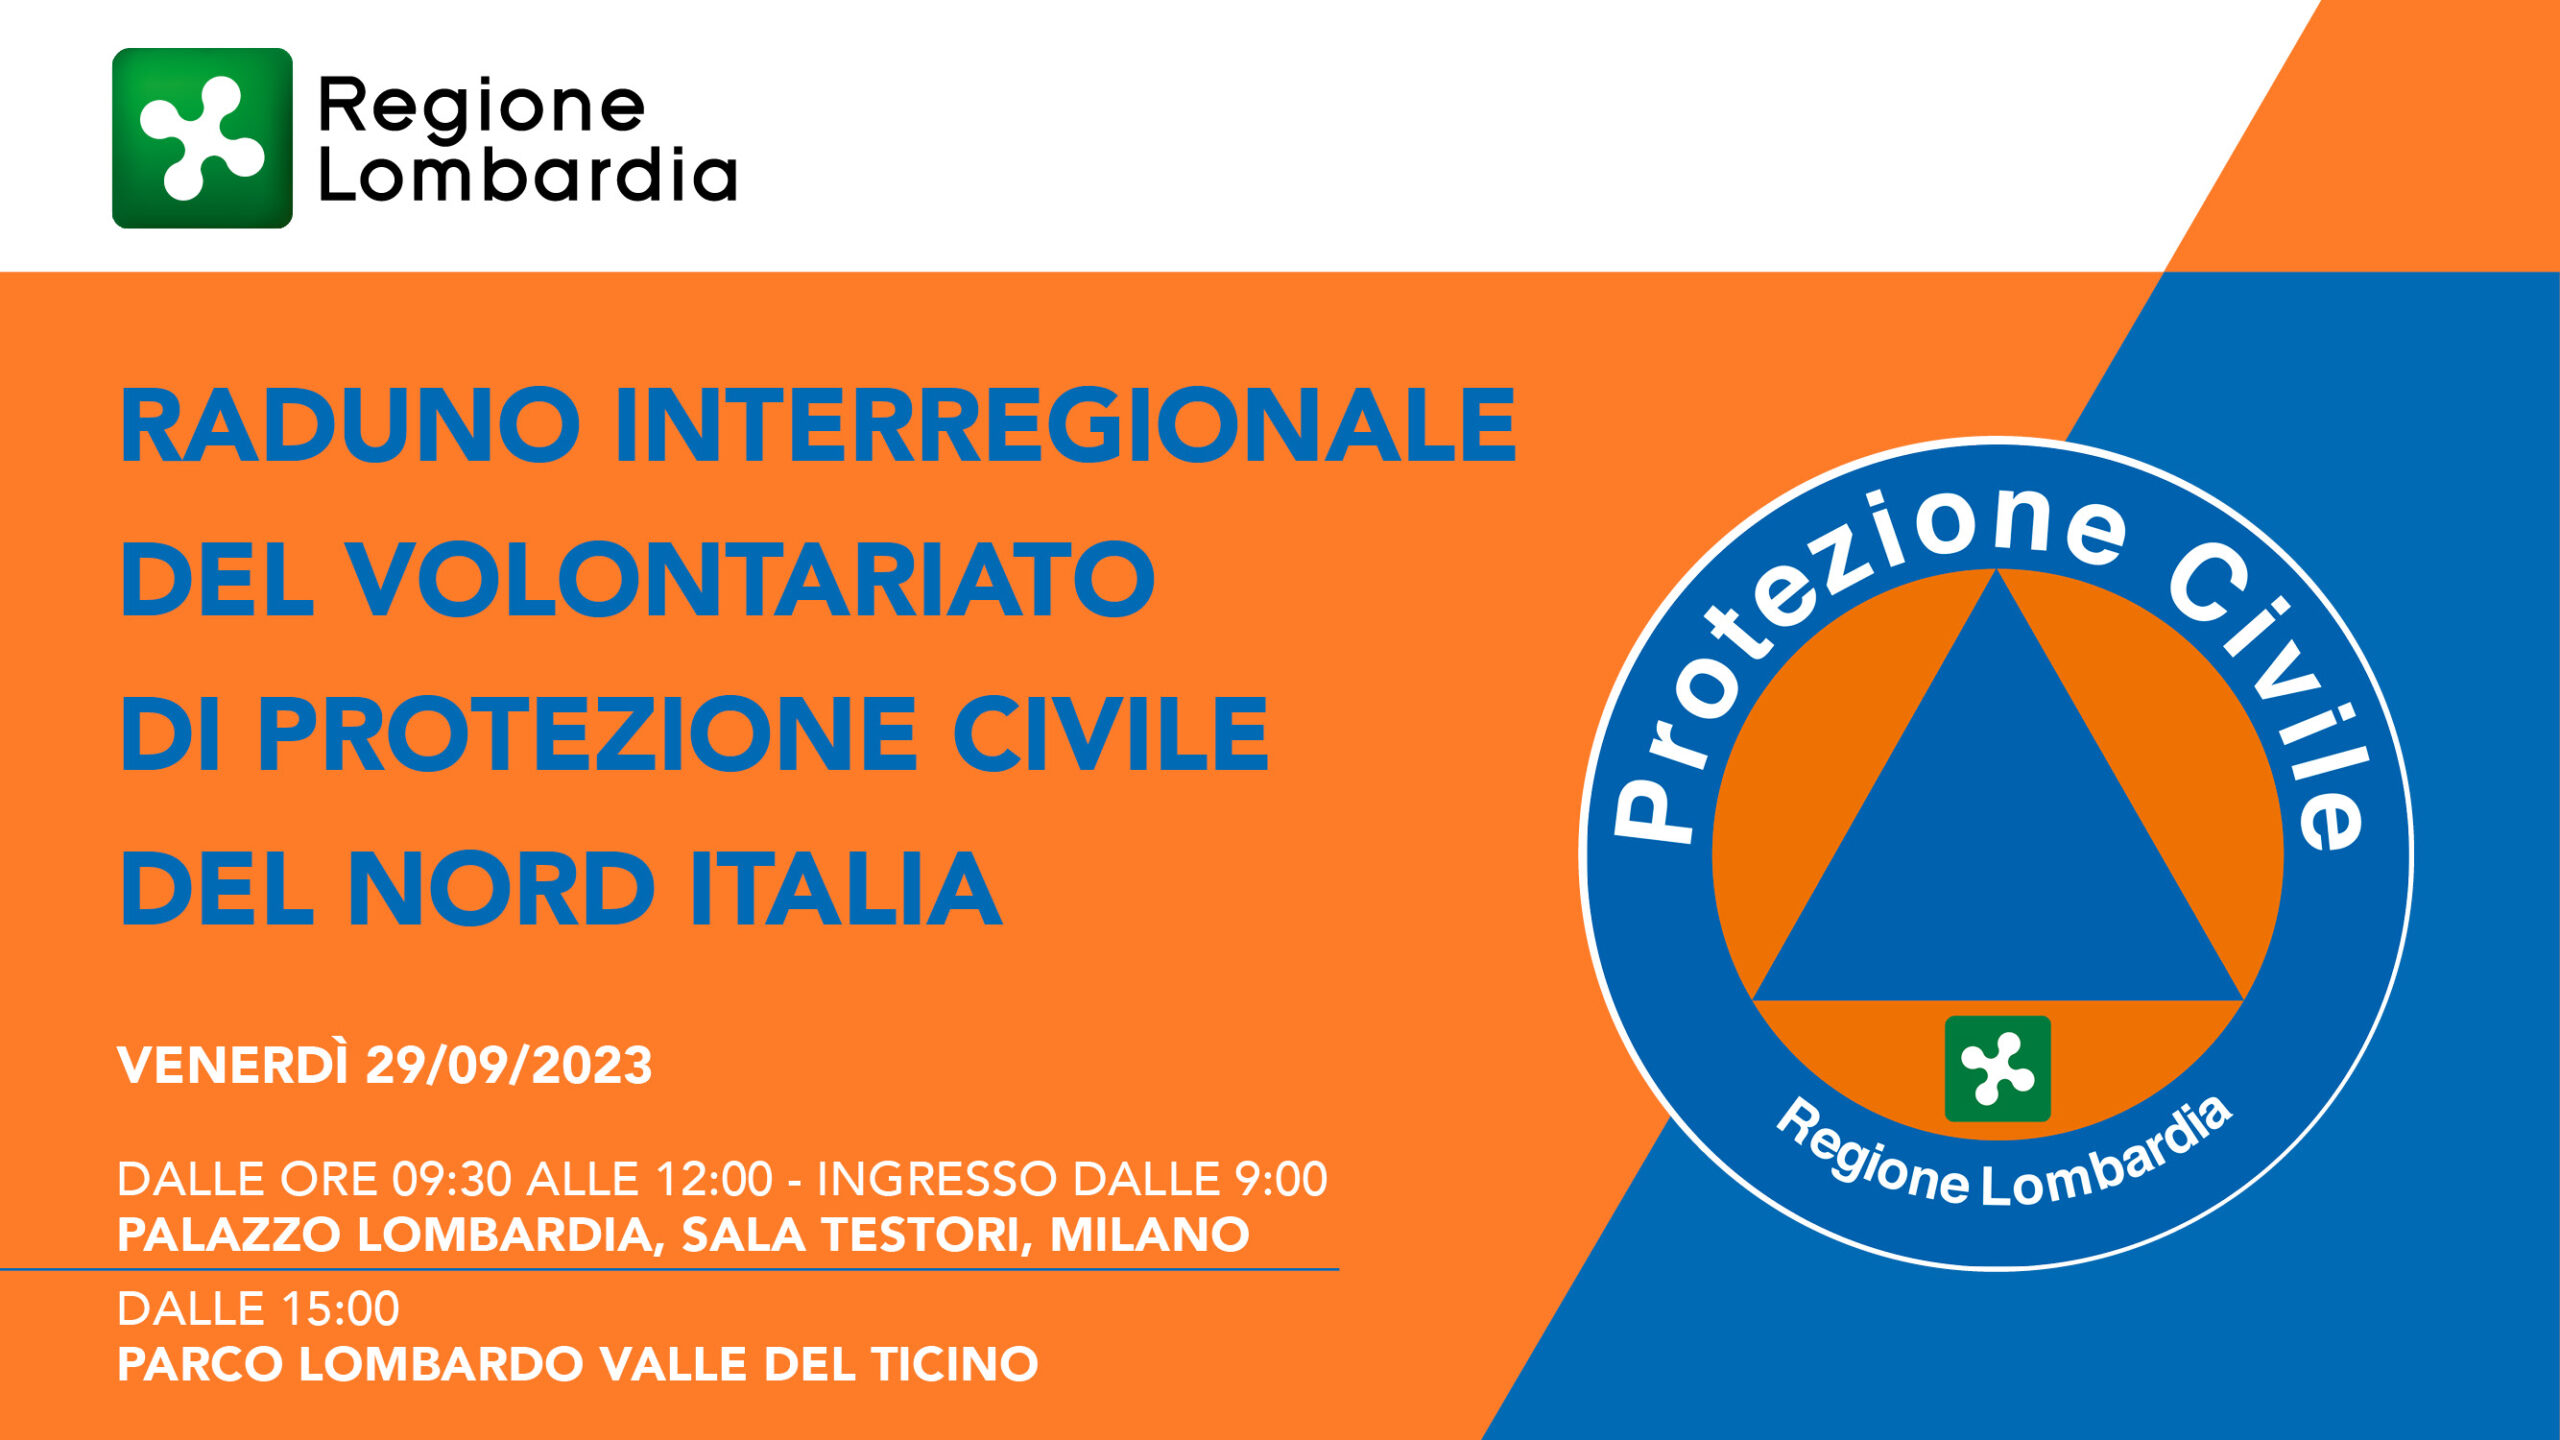 Raduno interregionale del volontariato della protezione civile del nord Italia - 29/09/2023